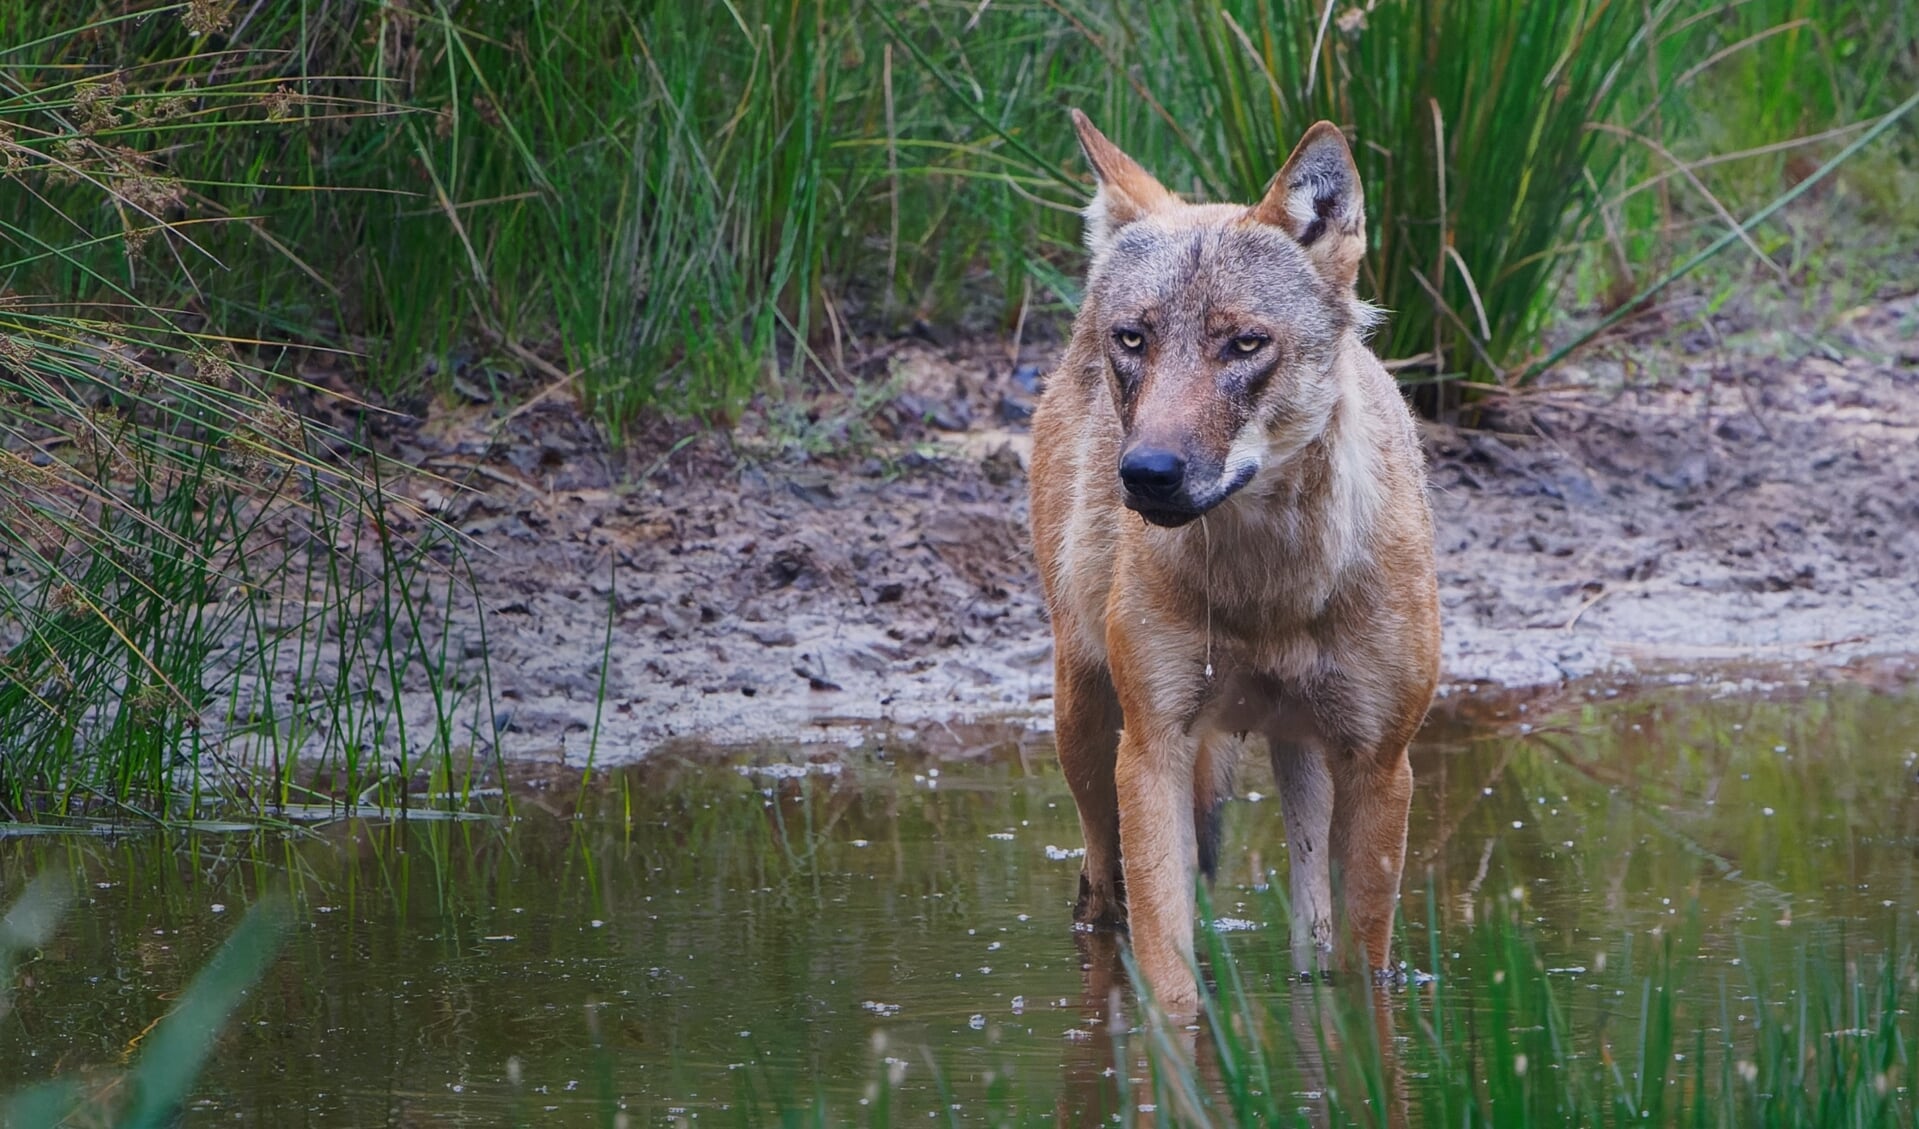 De wolf, twee eeuwen geleden werd uitgeroeid, is terug van weggeweest. Foto: Jeroen Kloppenburg